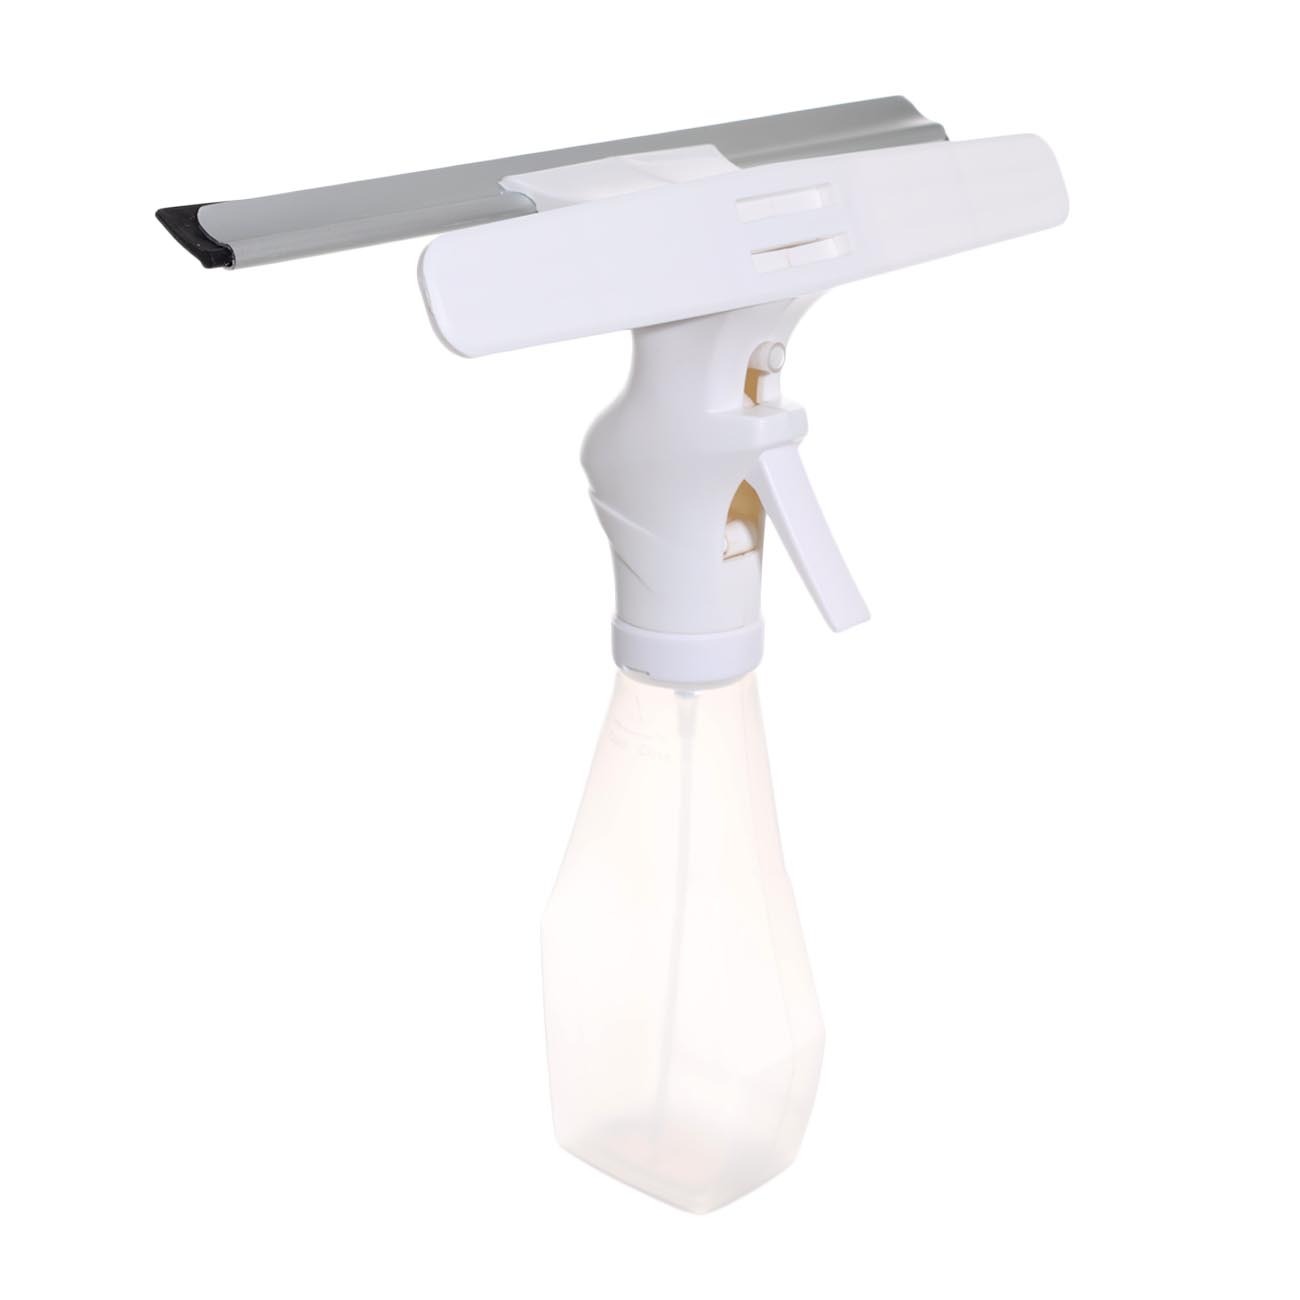 Пульверизатор для мытья окон, 220 мл, с тряпкой и скребком, белый, Clean изображение № 2